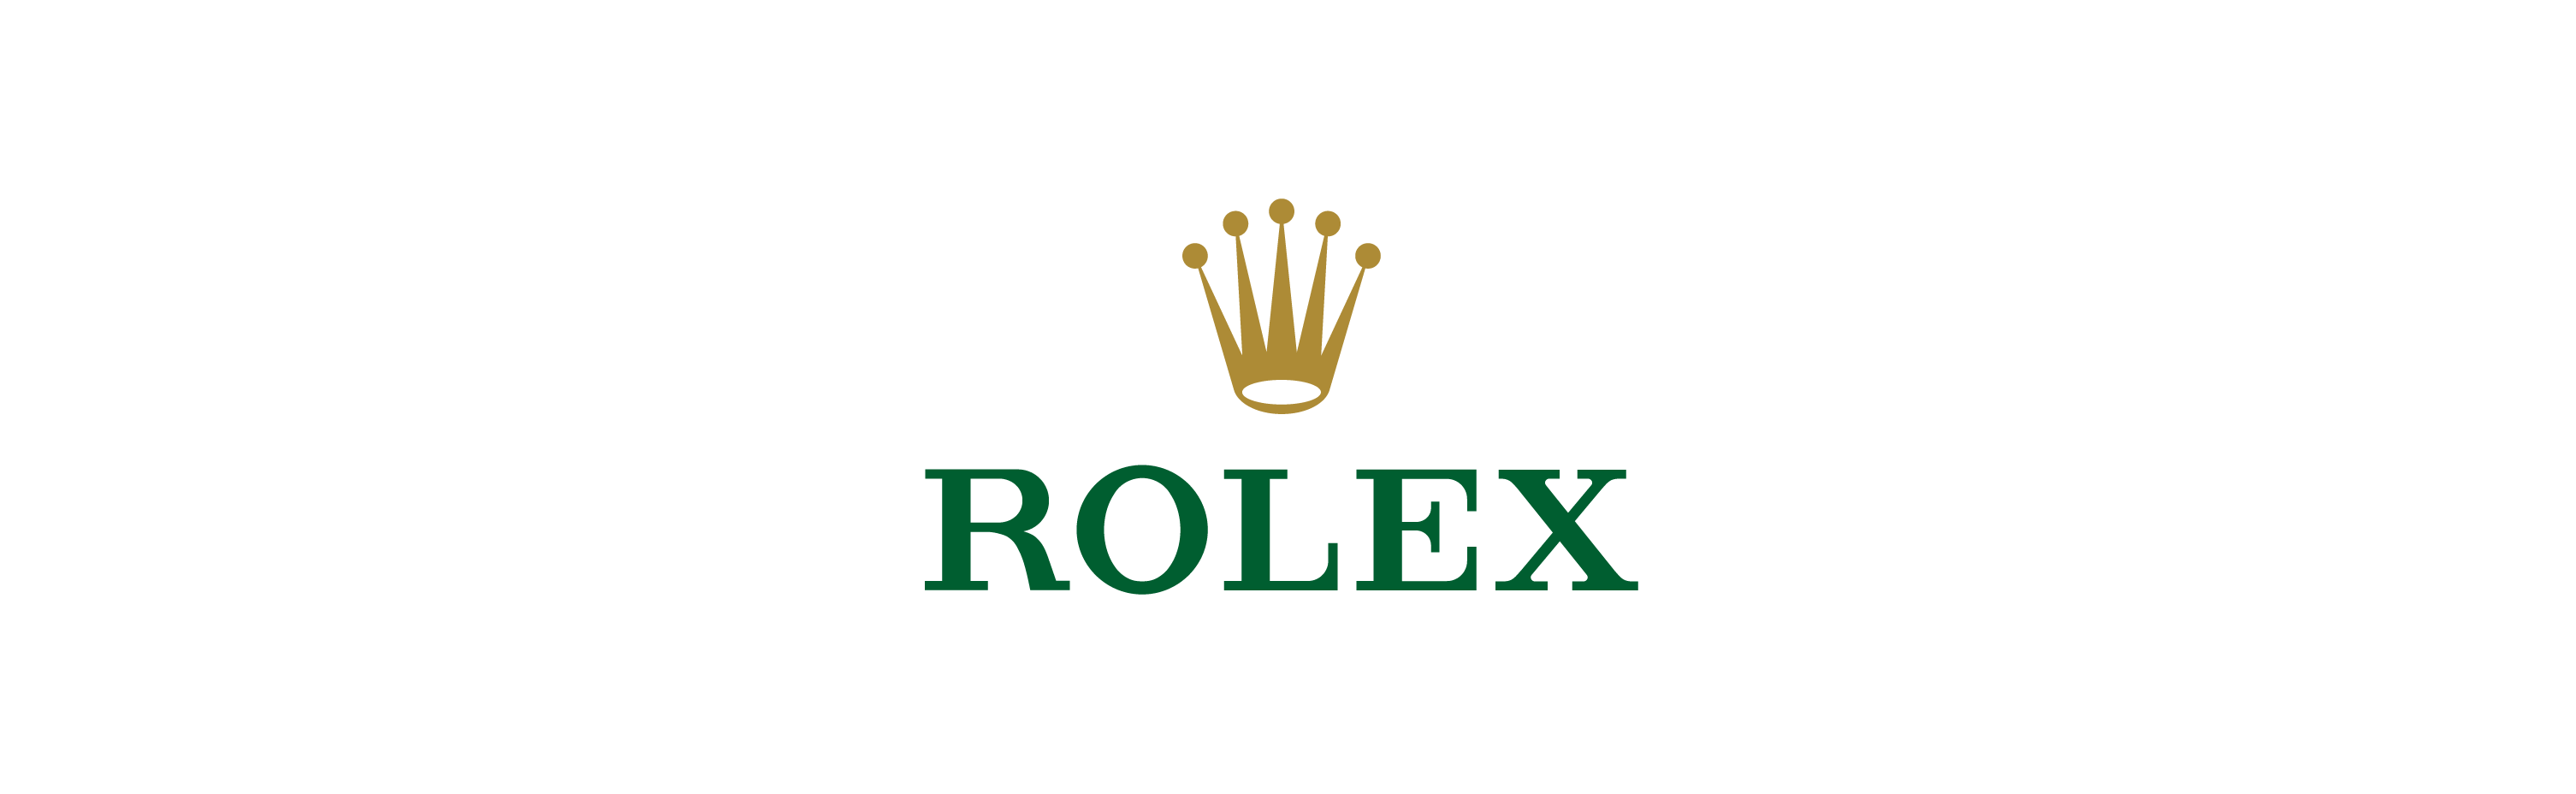 rolex logo fondos de pantalla hd,verde,texto,fuente,gráficos,diseño gráfico